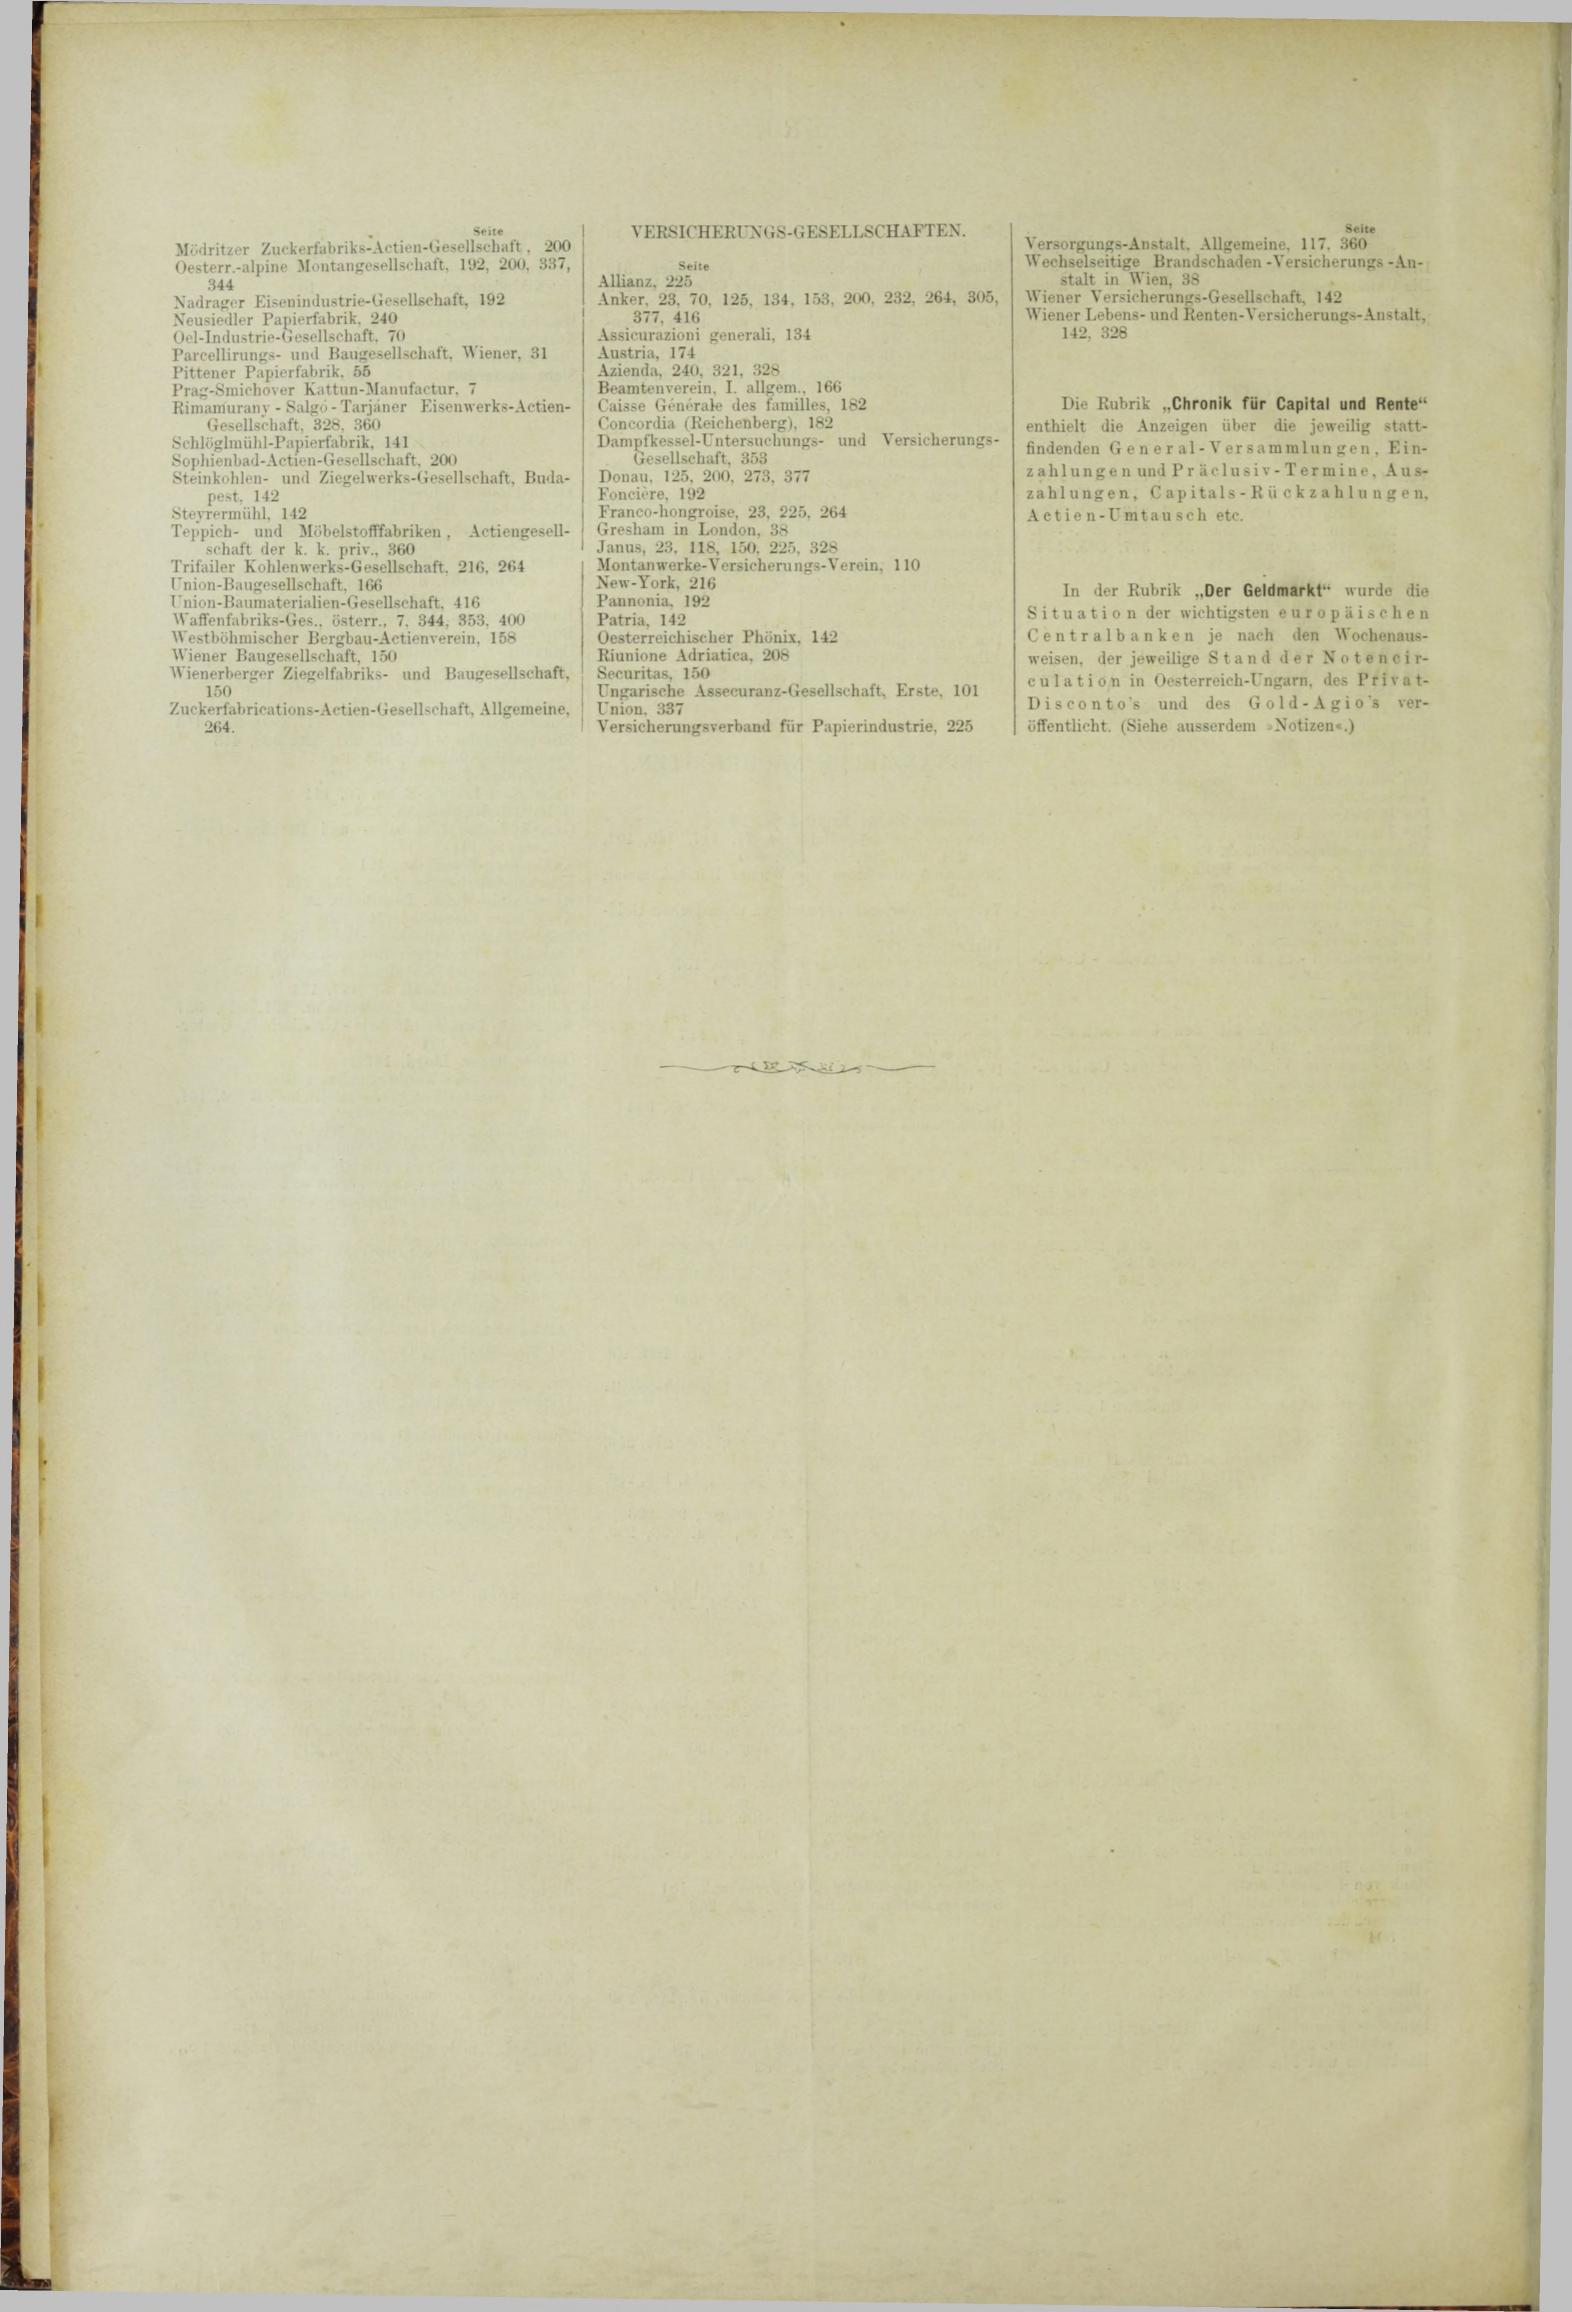 Der Tresor 19.04.1883 - Seite 12